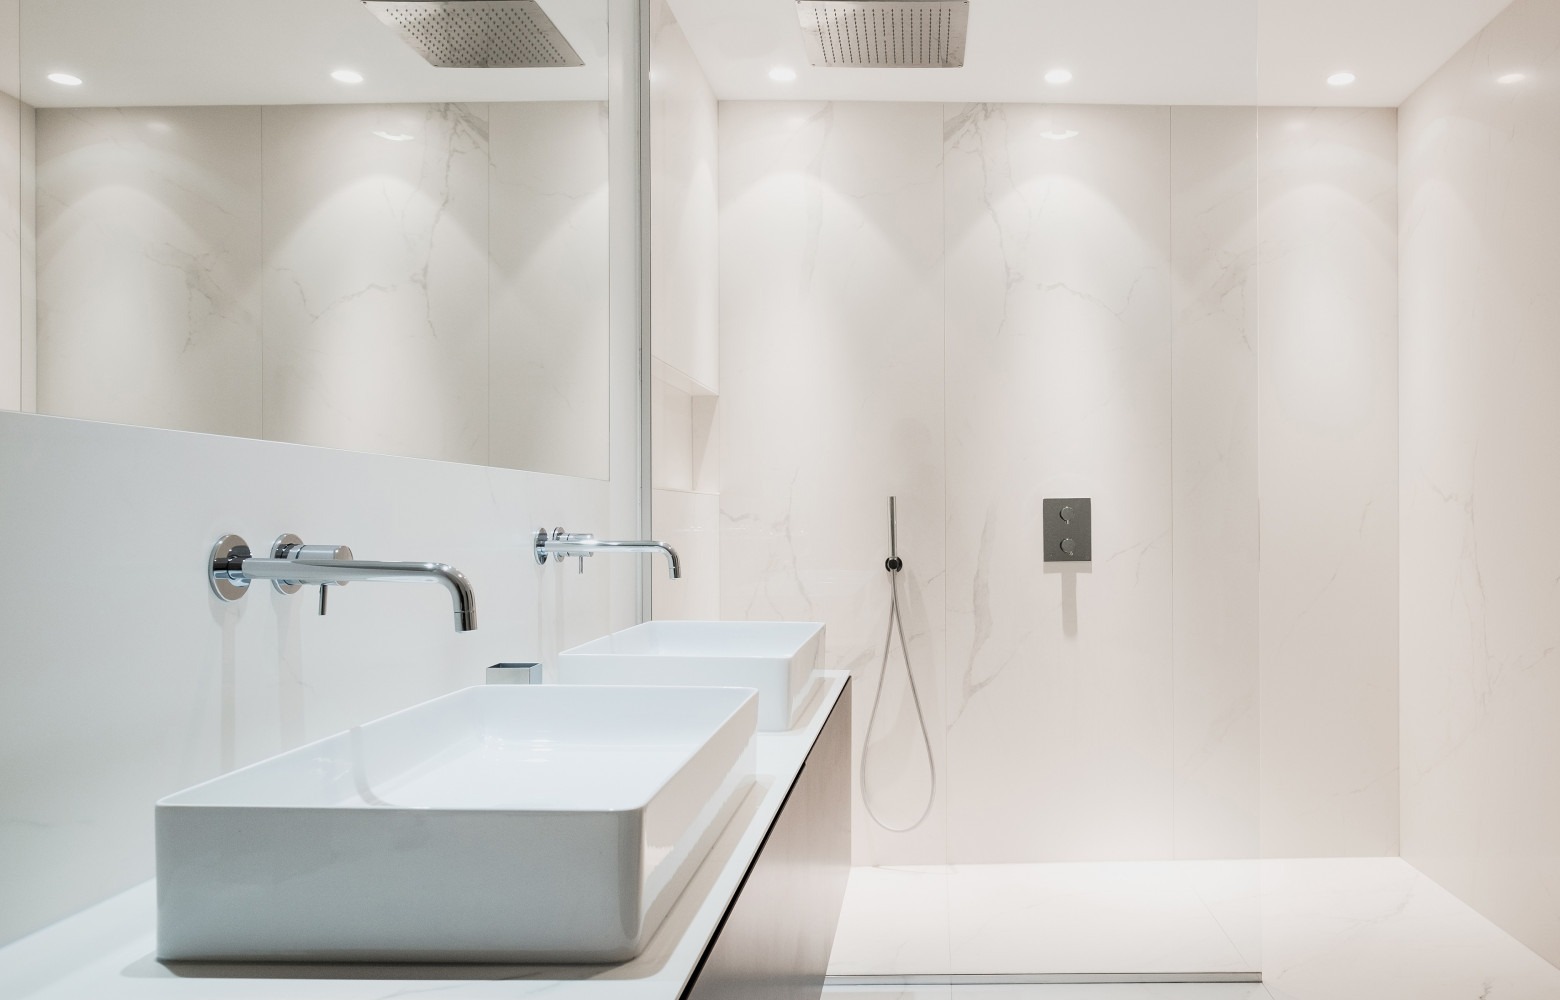 La salle de bains bénéficie d'une grande clarté grâce au sol en céramique qui se prolonge jusque...